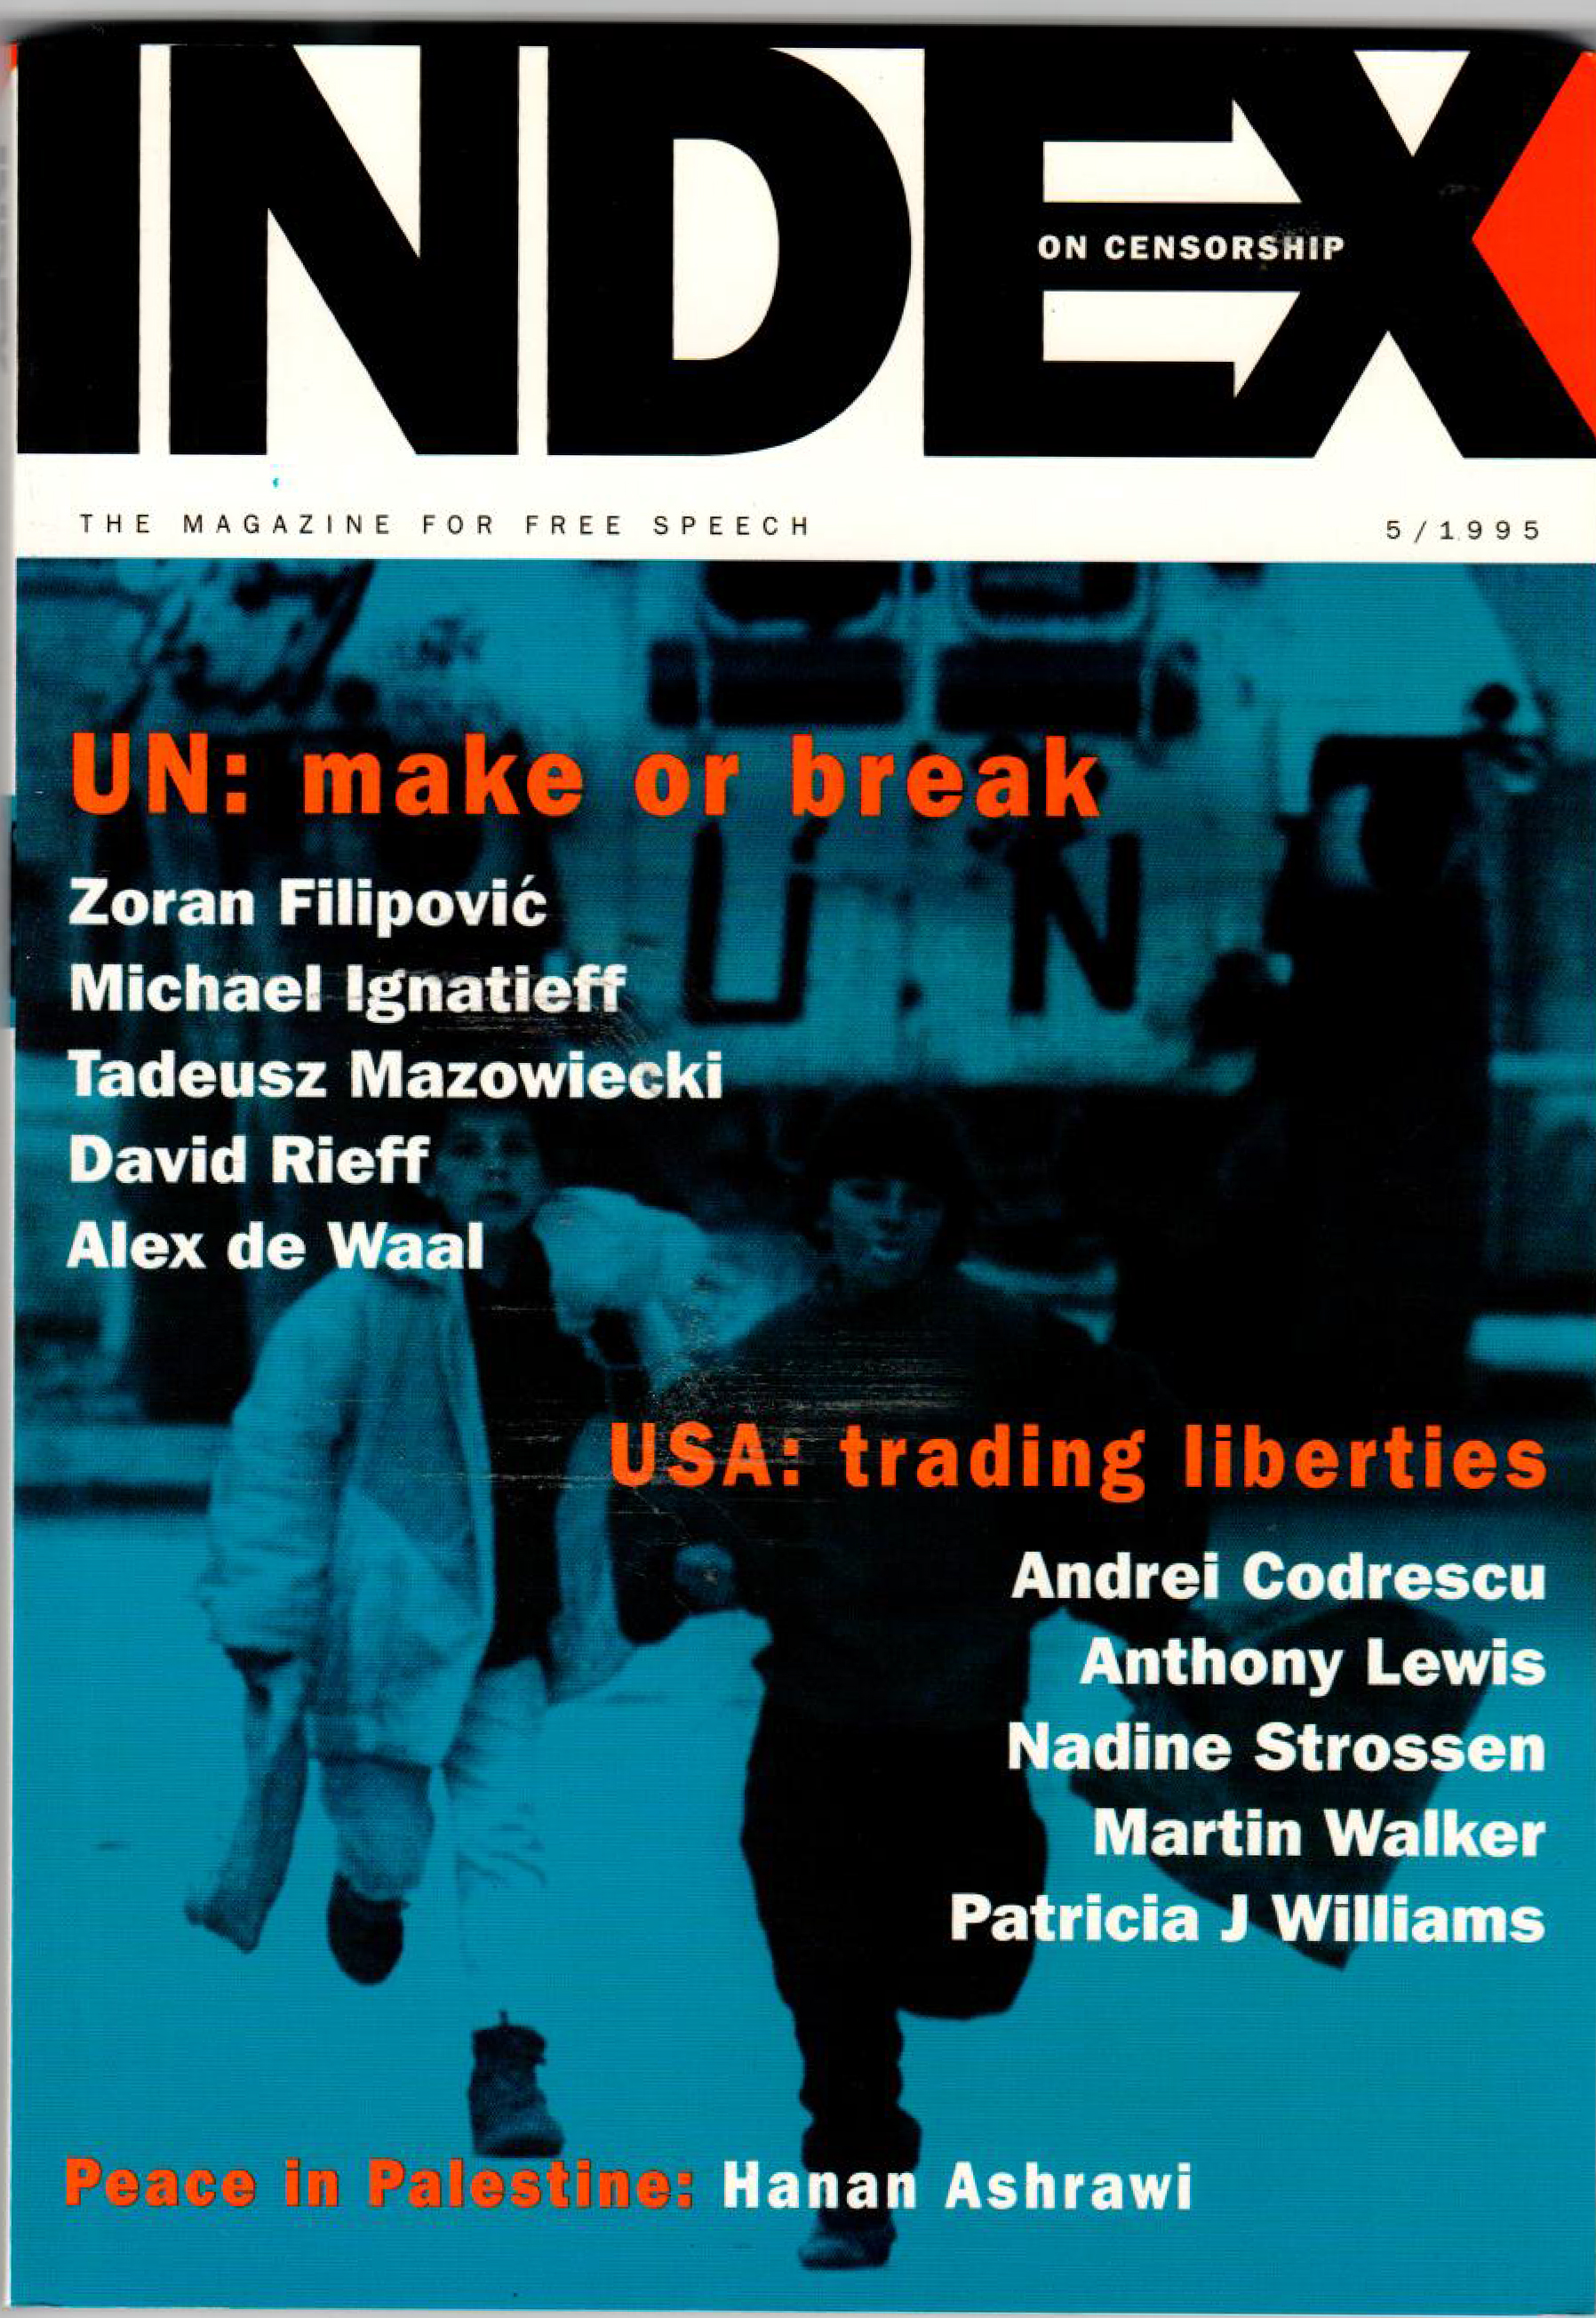 UN: Make or break